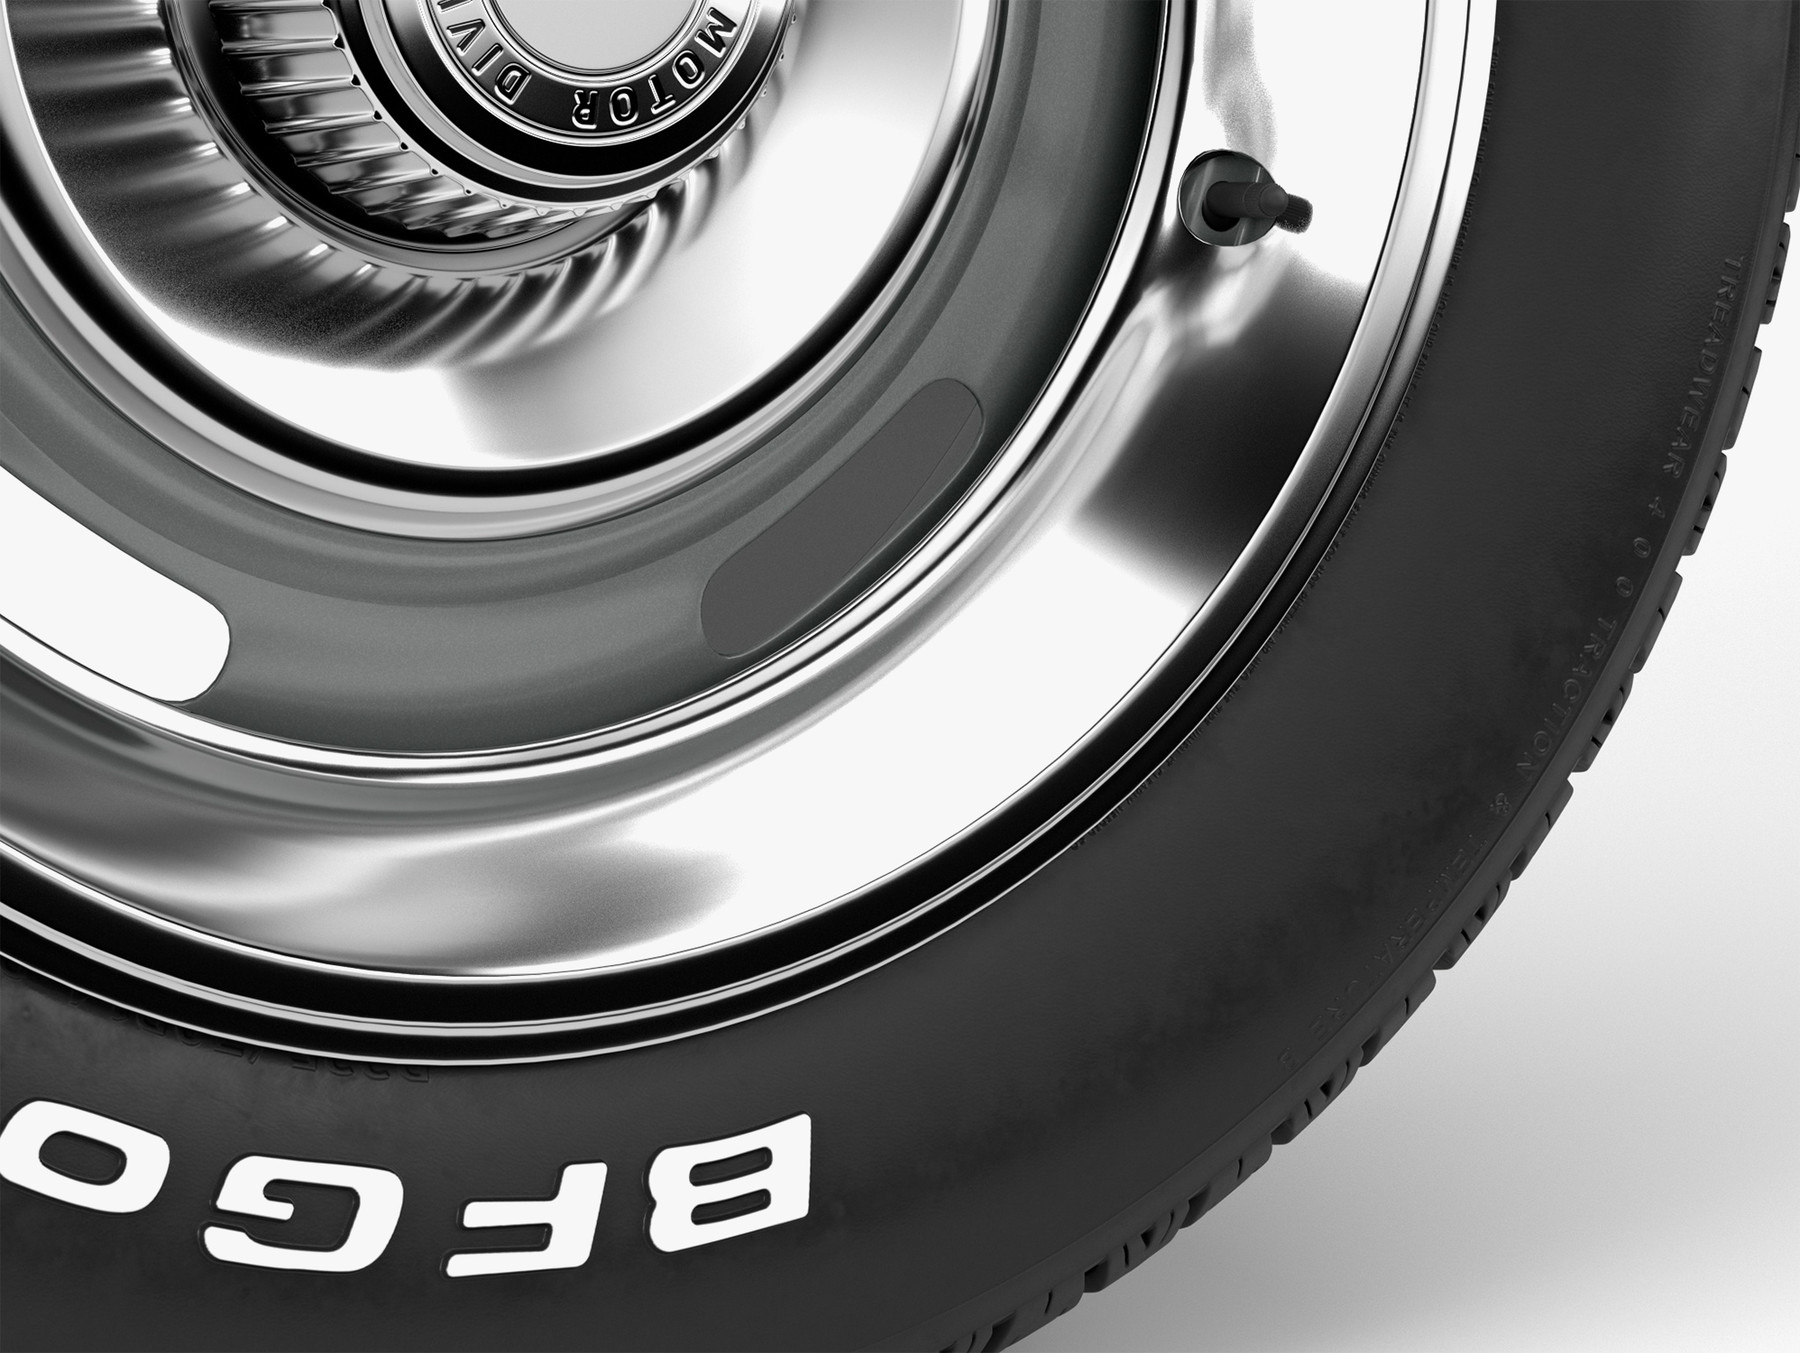 BFGoodrich Radial T/A Tire GM Rally Wheel w/ Trim (15 x 7-inch) Highly deta...